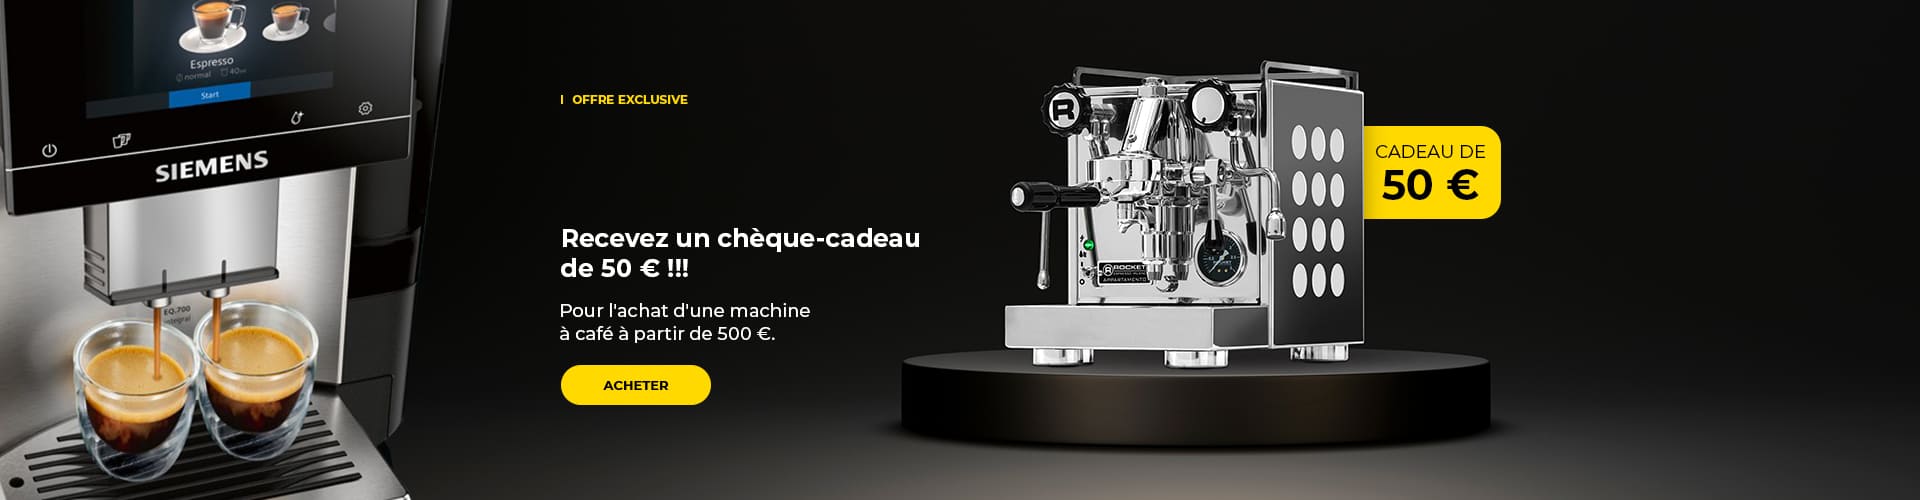 Recevez un chèque-cadeau de 50 € !!! Pour l'achat d'une machine à café à partir de 500 €.